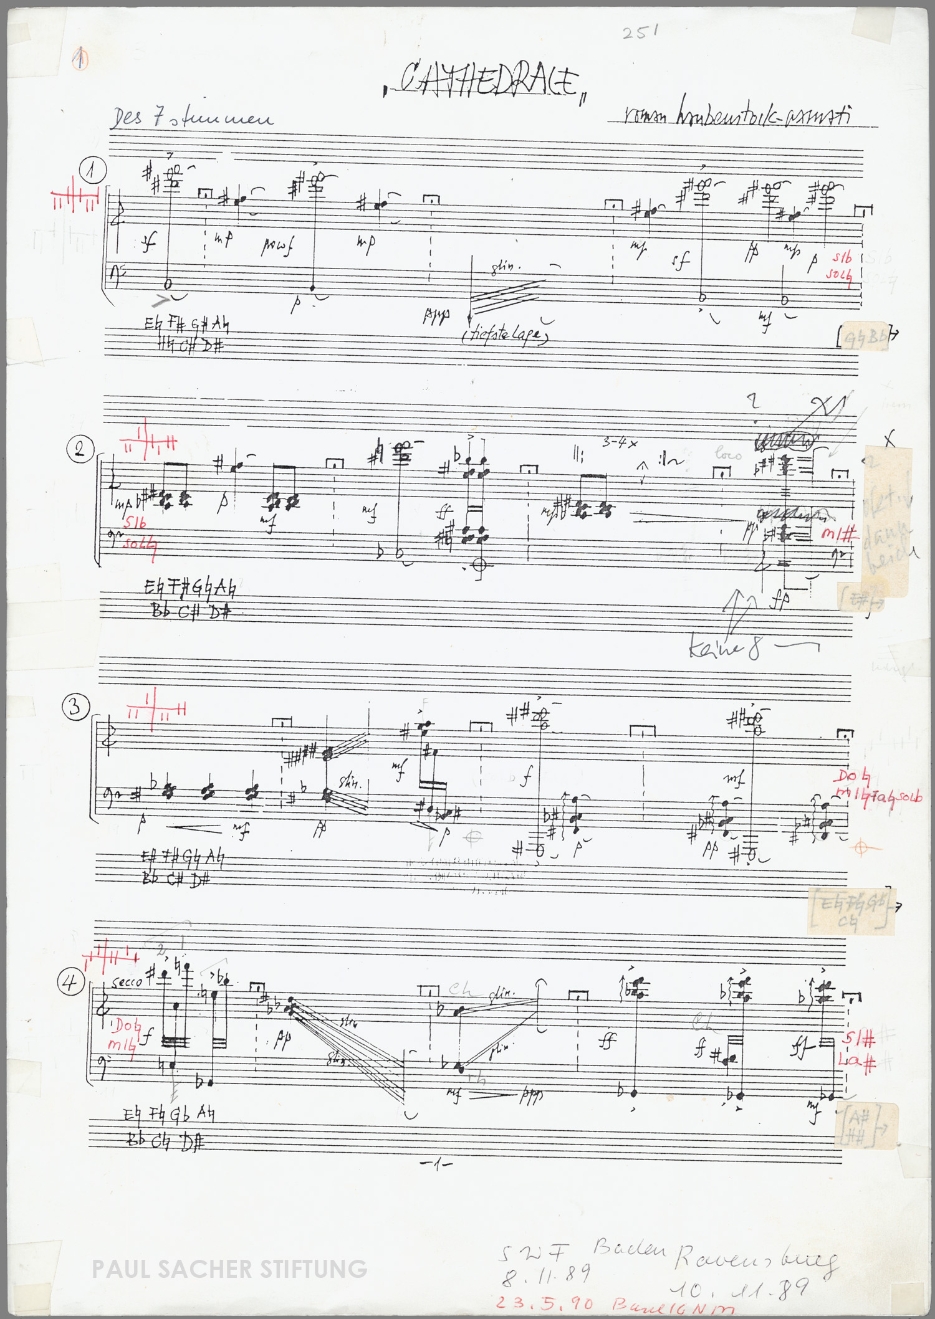 Roman Haubenstock-Ramati, Cathédrale I für Harfe solo (1988). Fotokopie der Reinschrift mit Aufführungseintragungen von Ursula Holliger, S. 1